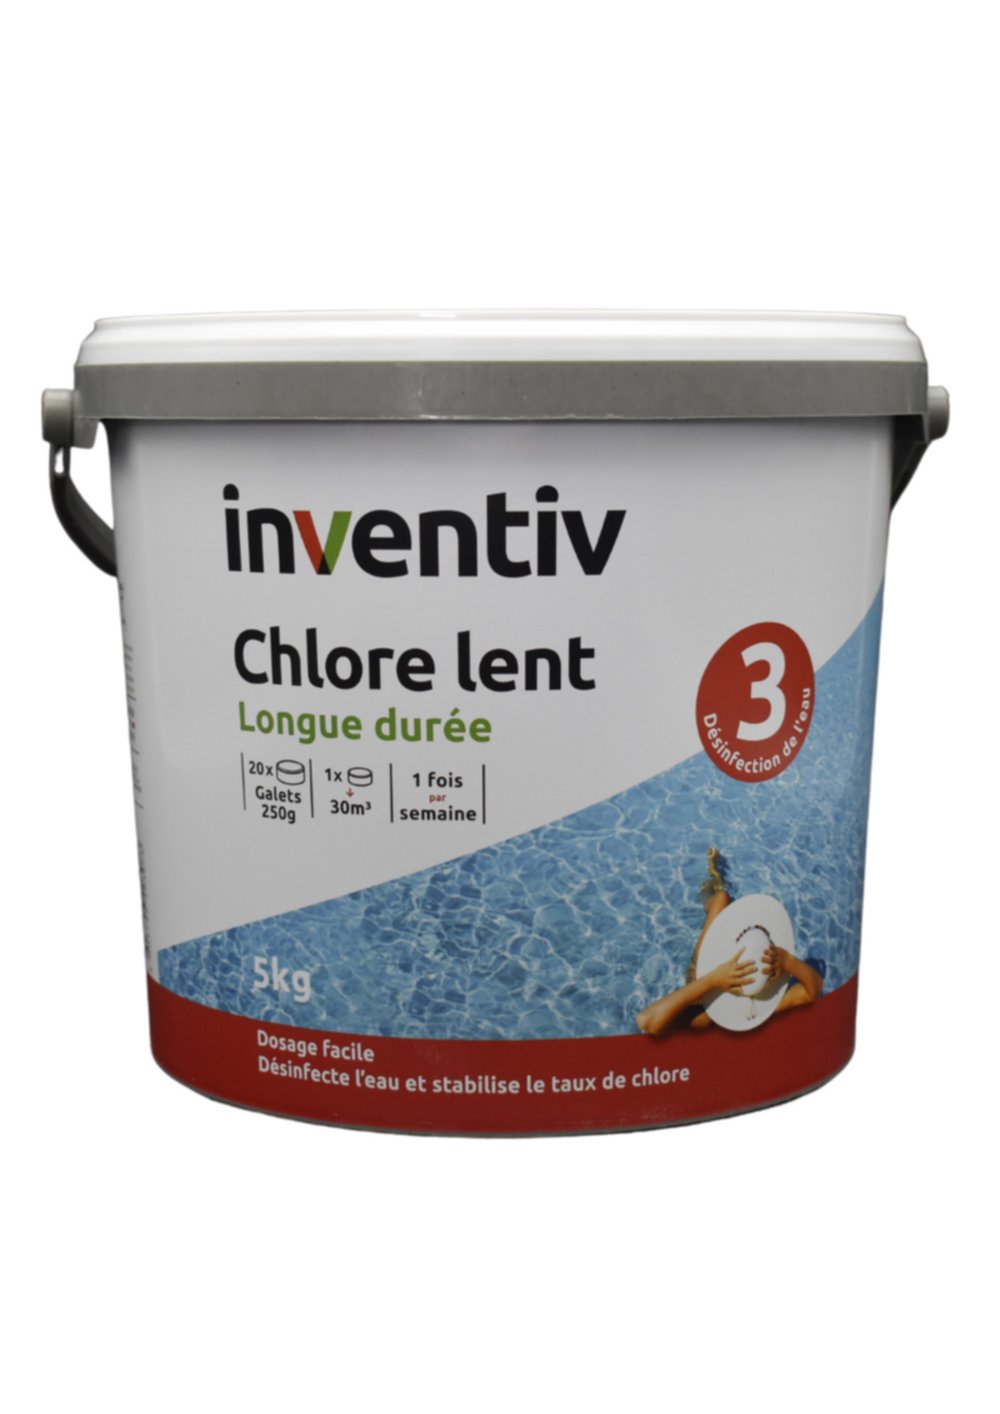 Chlore lent galet 250g 5 kg - INVENTIV